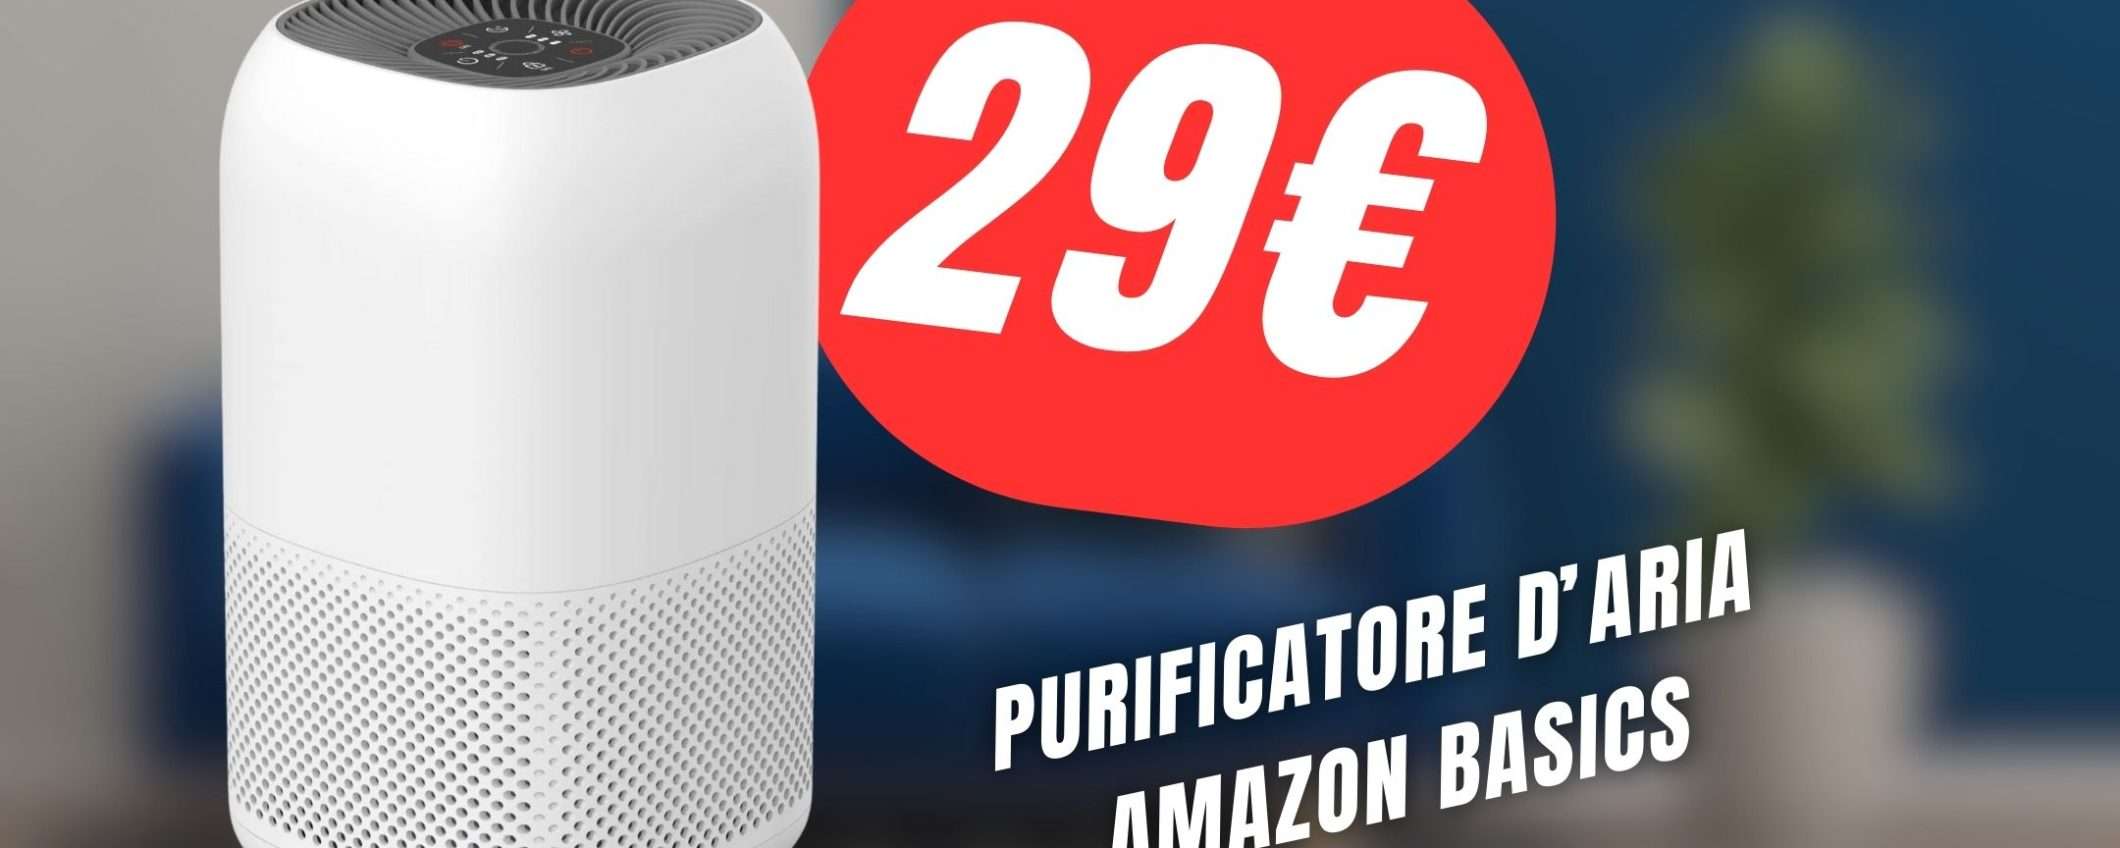 Il Purificatore d'aria di Amazon CROLLA a soli 29€!